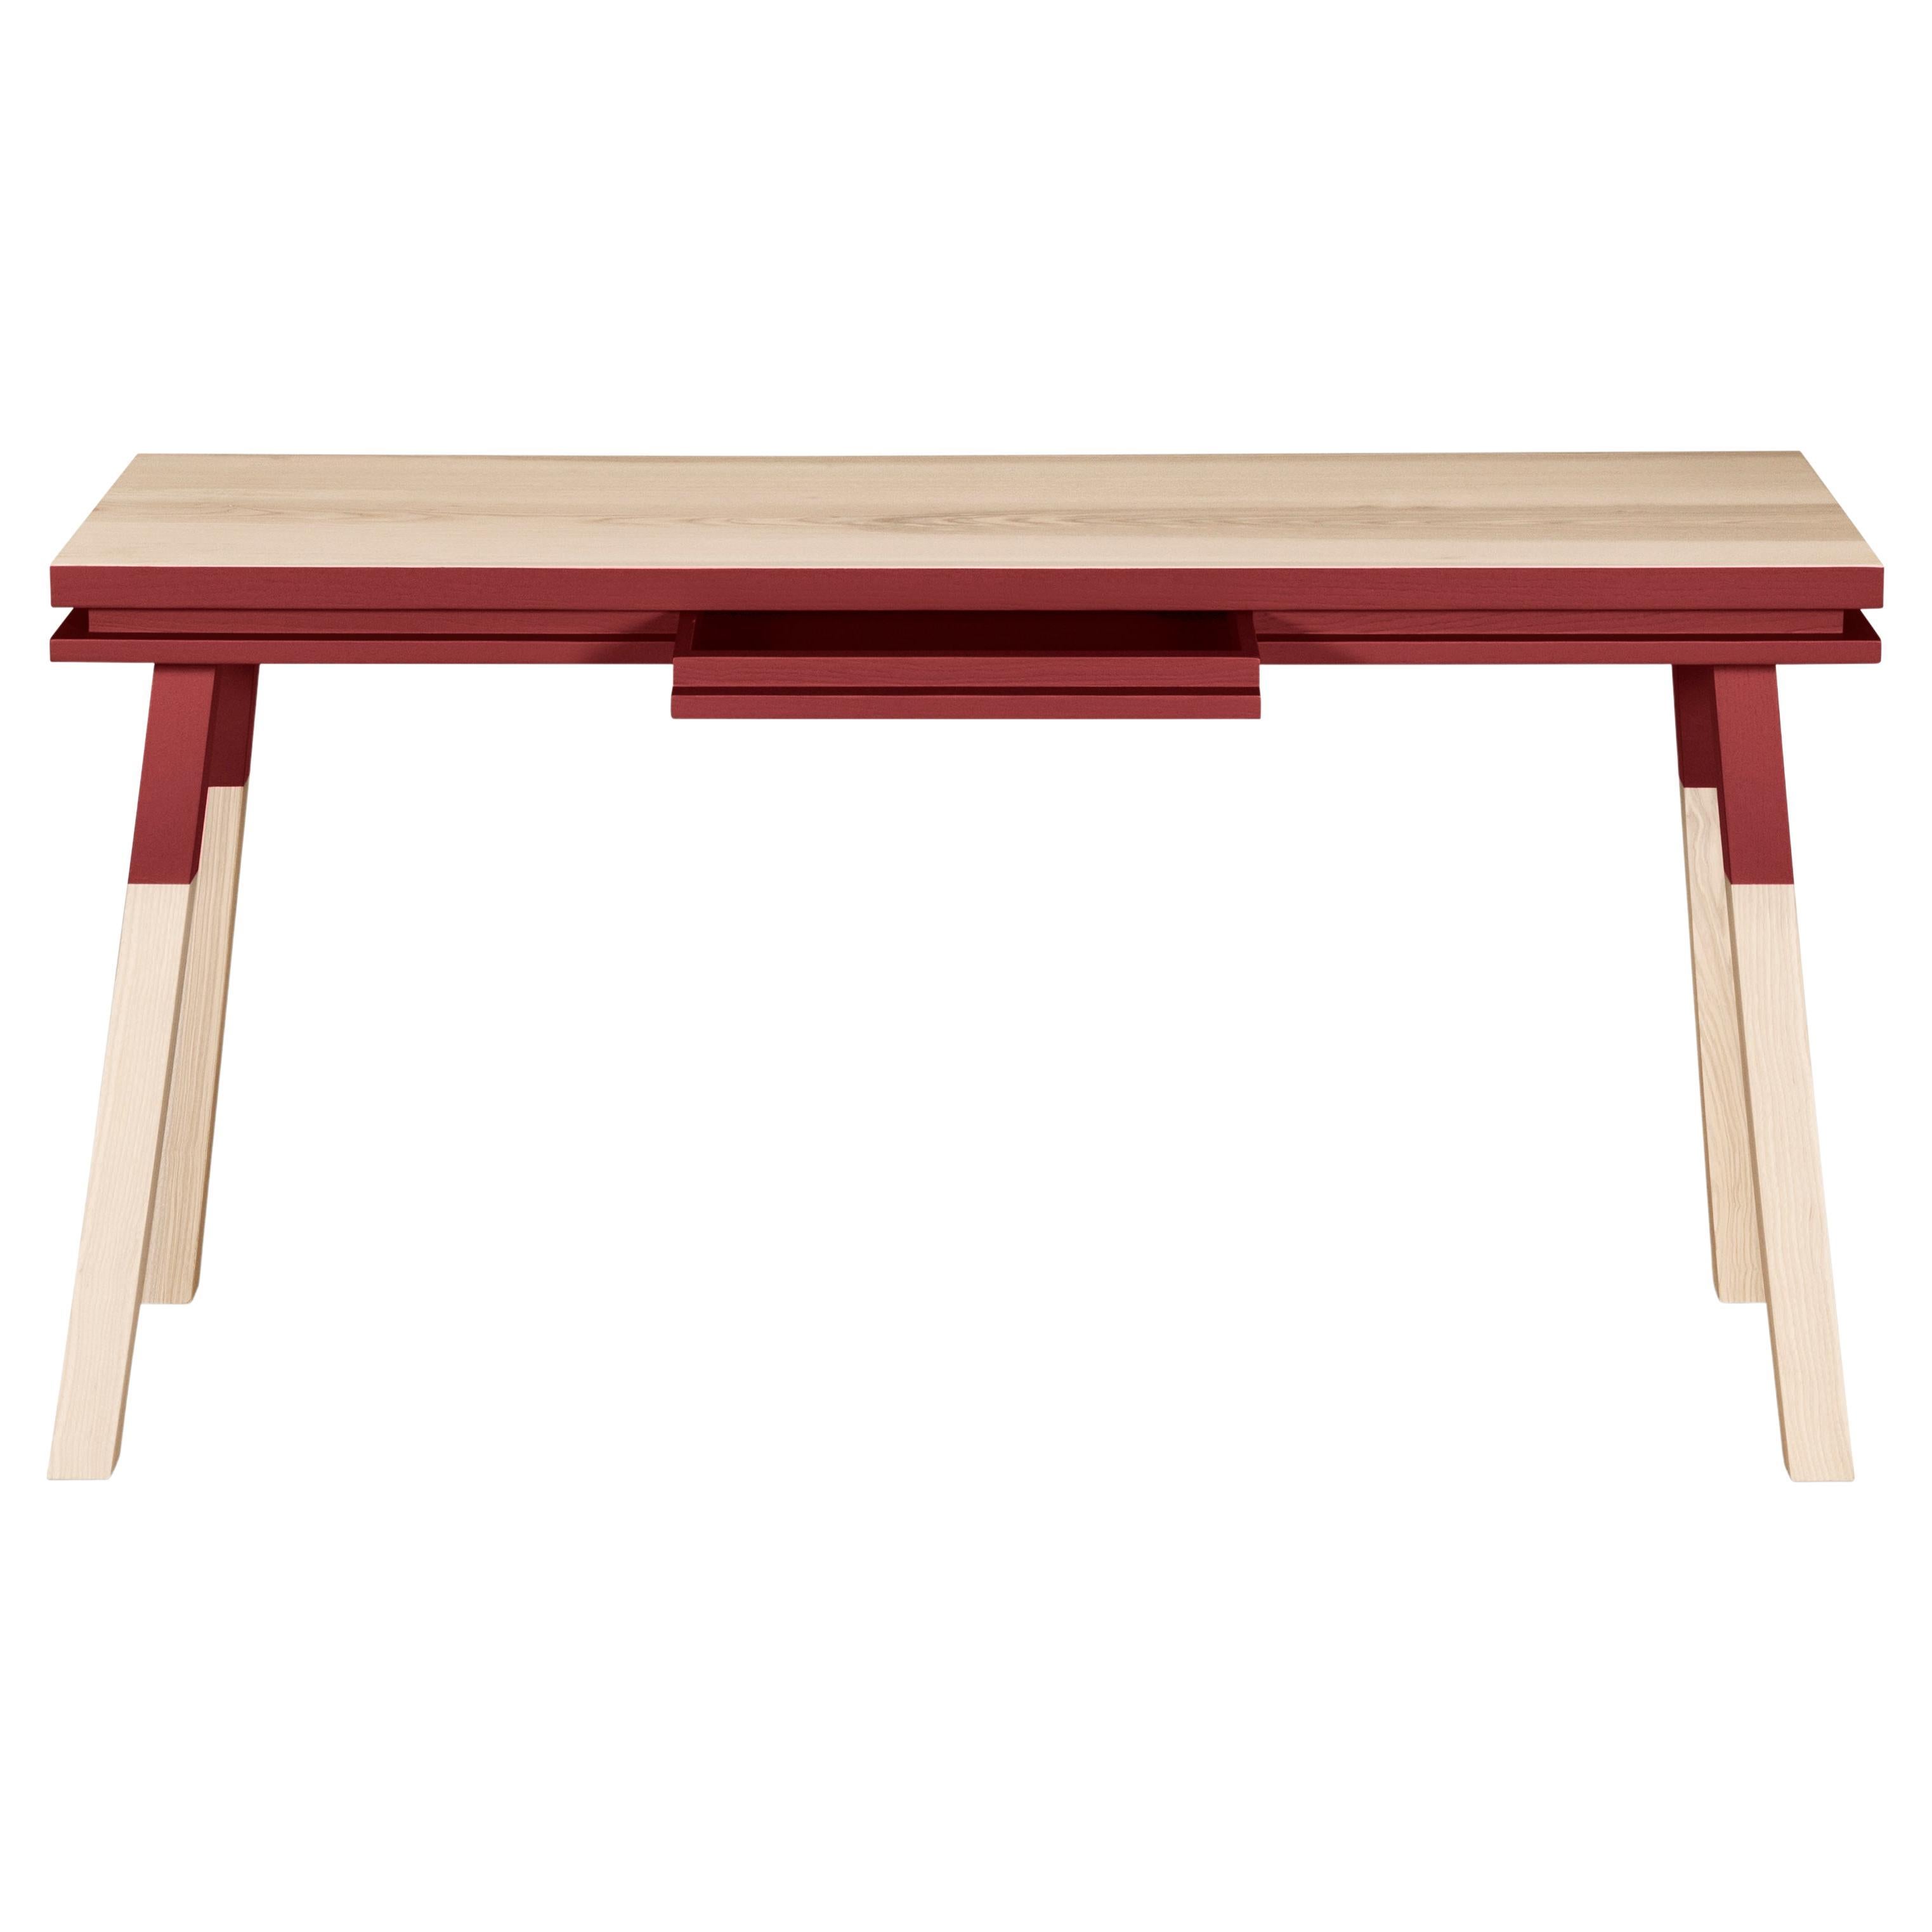 Roter rechteckiger Schreibtisch aus Massivholz, entworfen in Paris und hergestellt in Frankreich